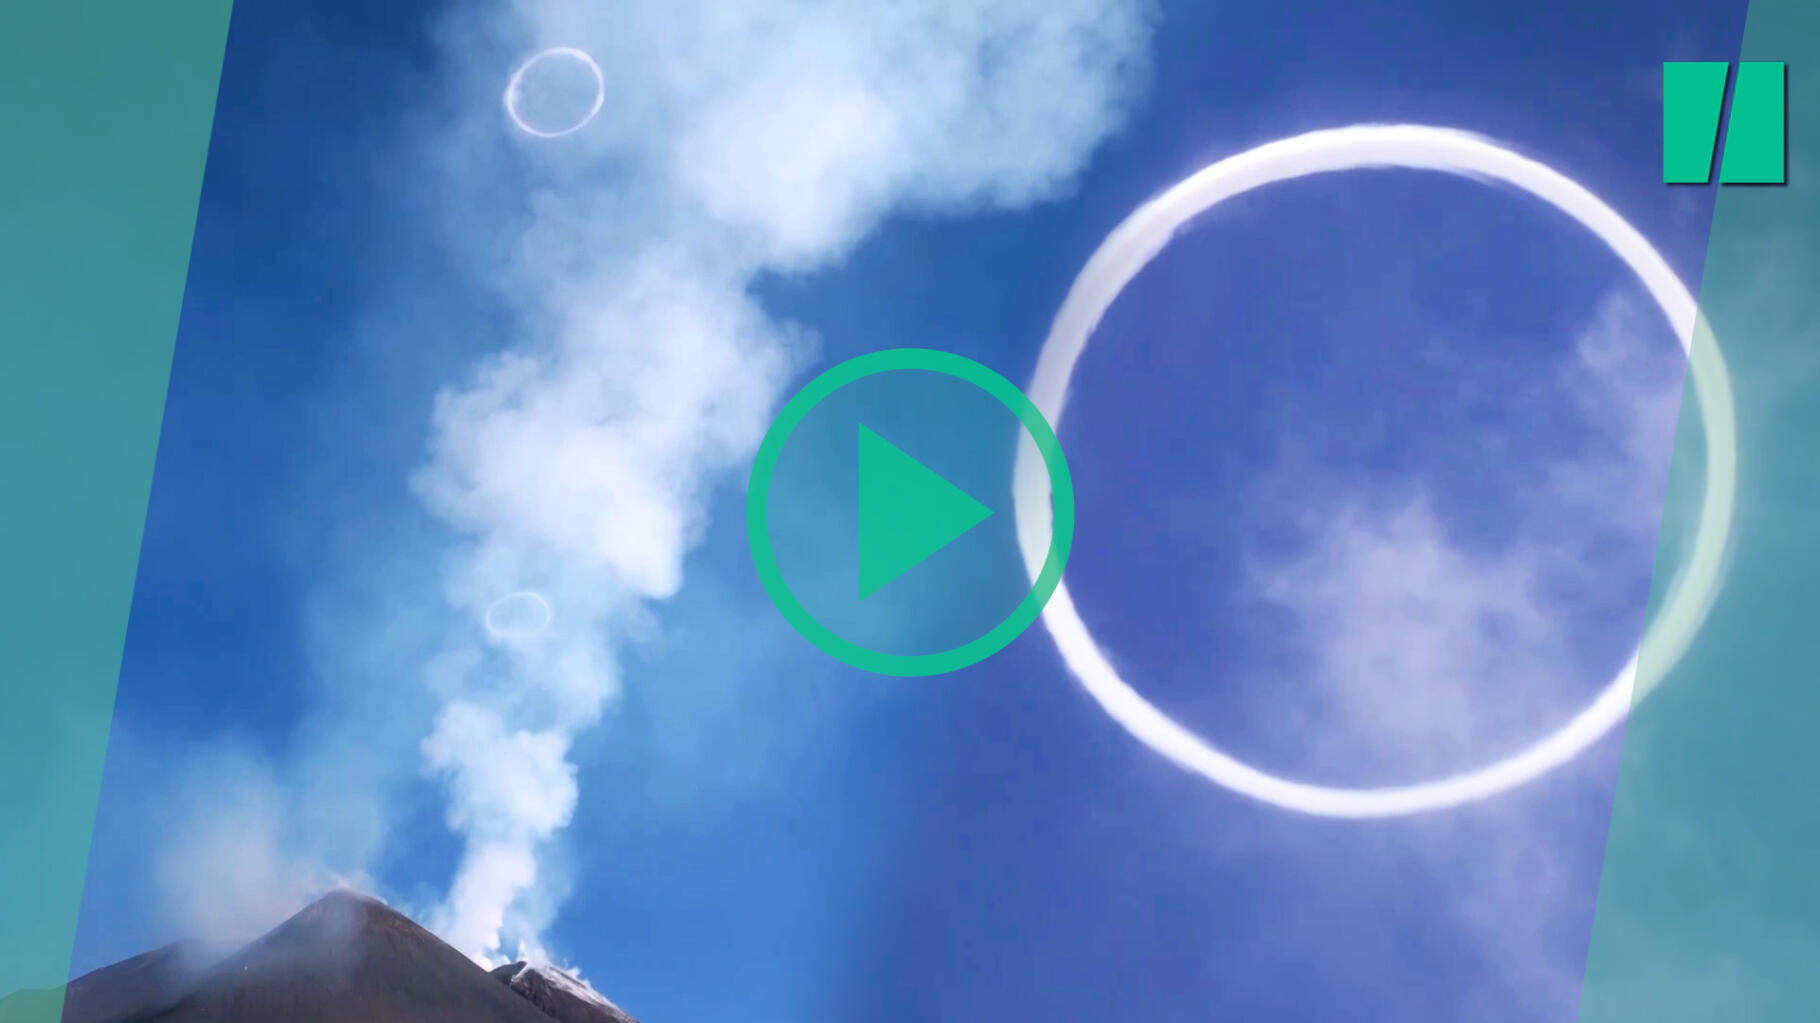 In Italia, l’Etna emette strani anelli di fumo sotto gli sguardi stupiti dei turisti